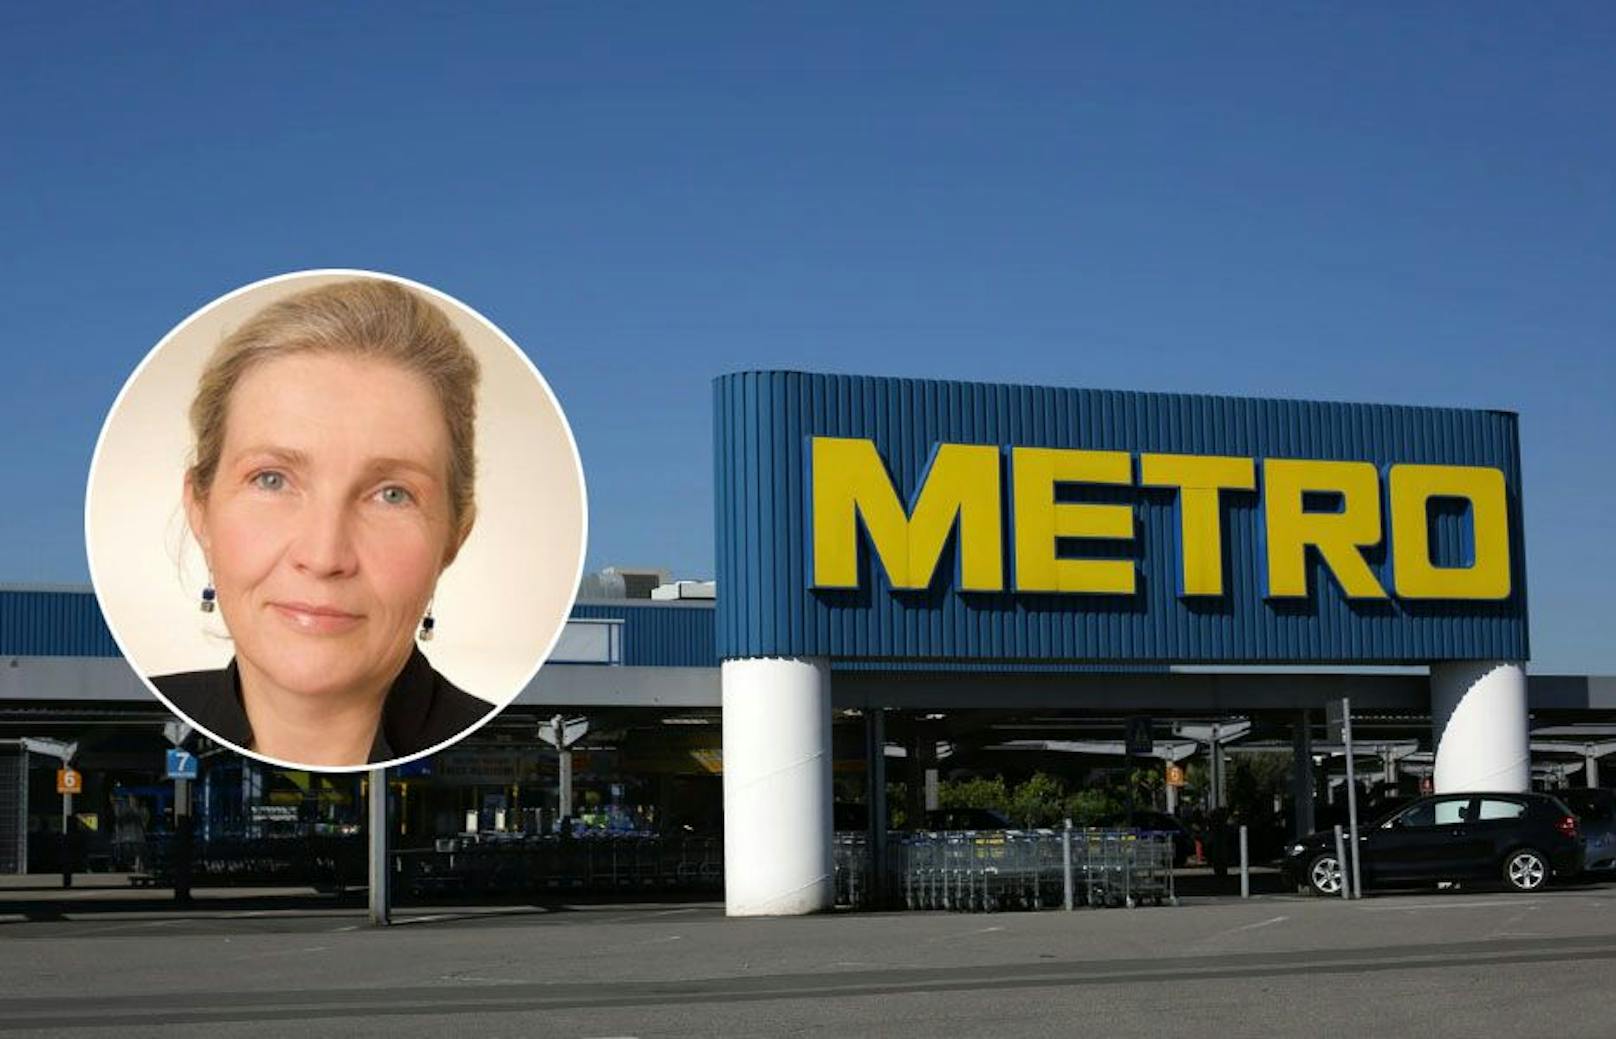 Metro sucht 100 Mitarbeiter – zu wenige Bewerber